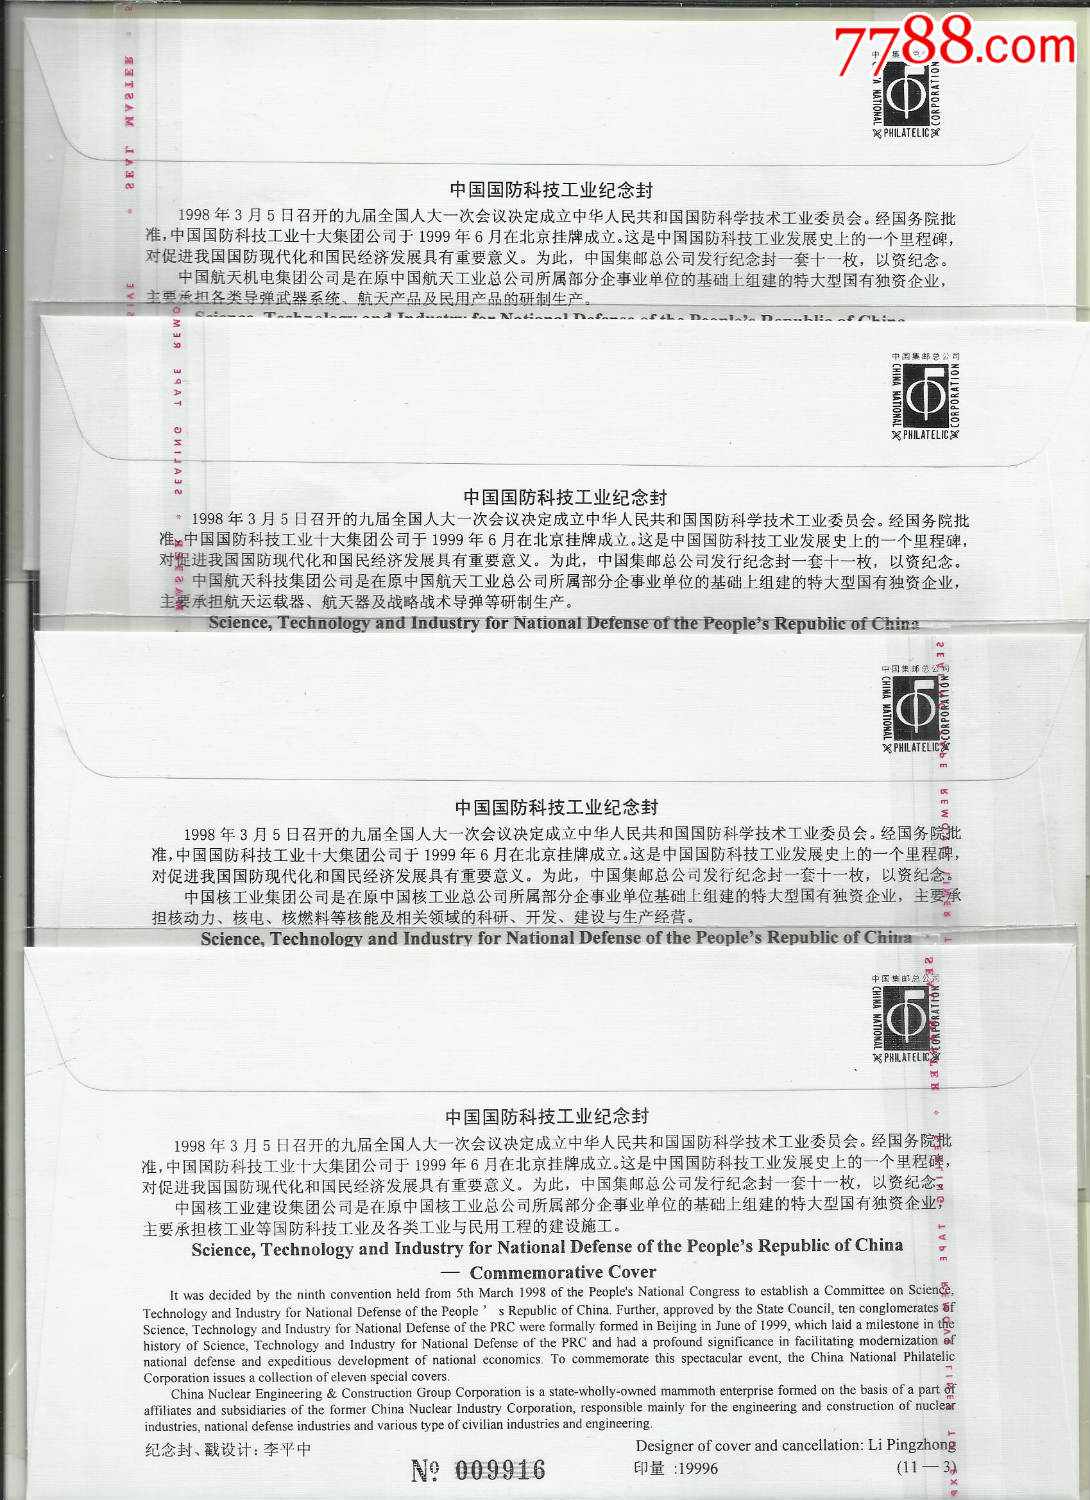 1998年,中国国防科技工业纪念封,四个品种,